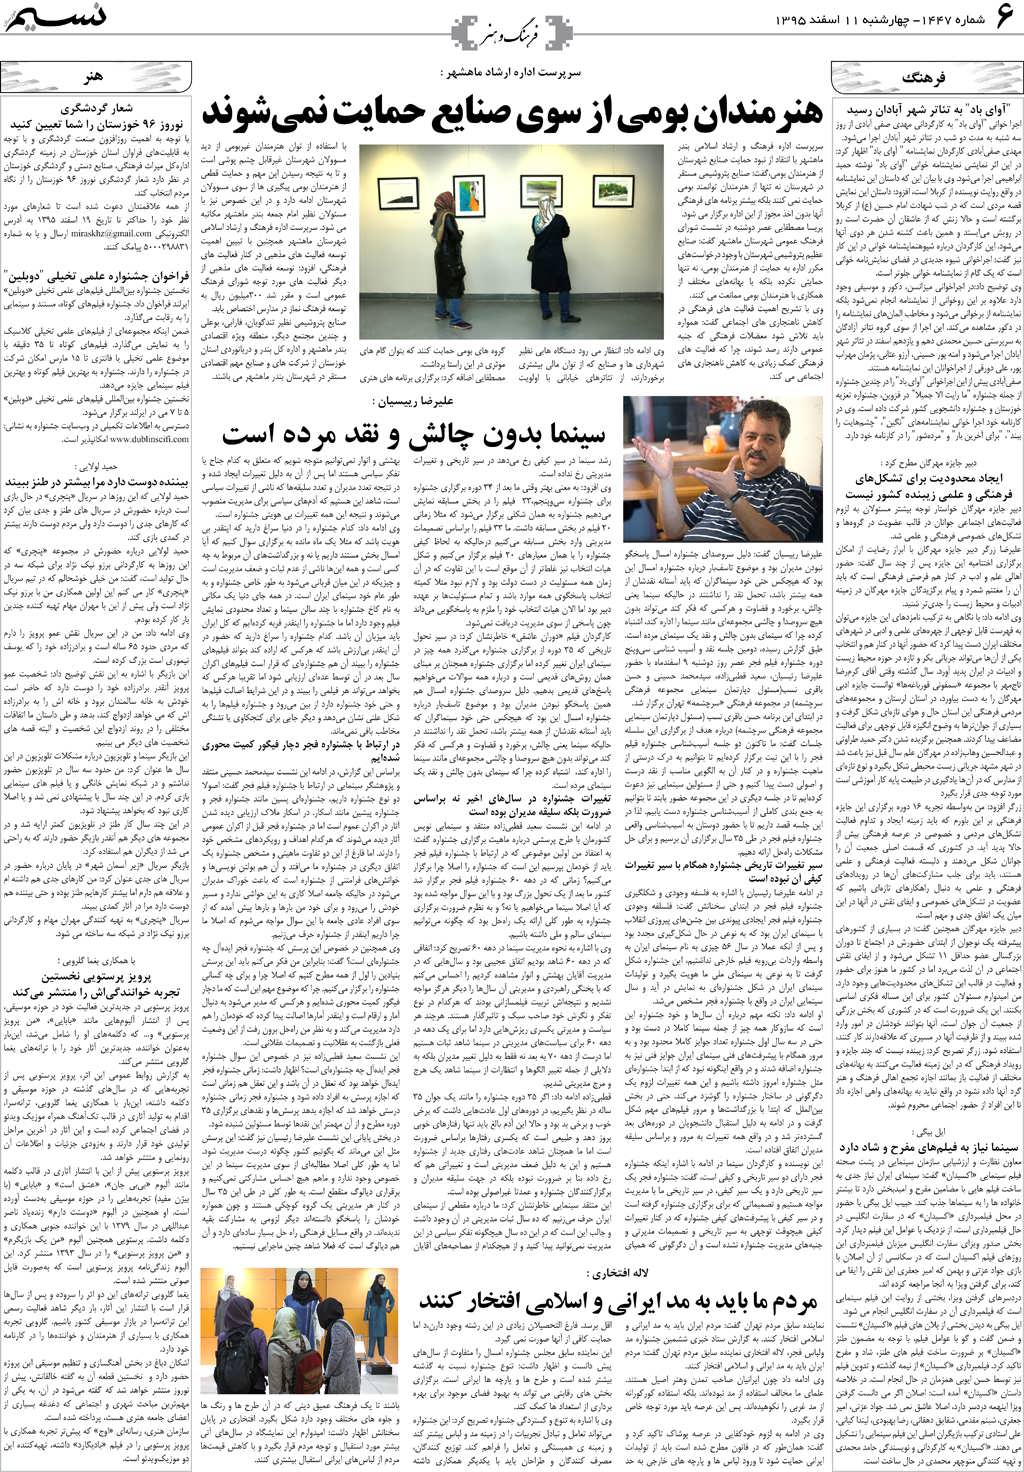 صفحه فرهنگ و هنر روزنامه نسیم شماره 1447